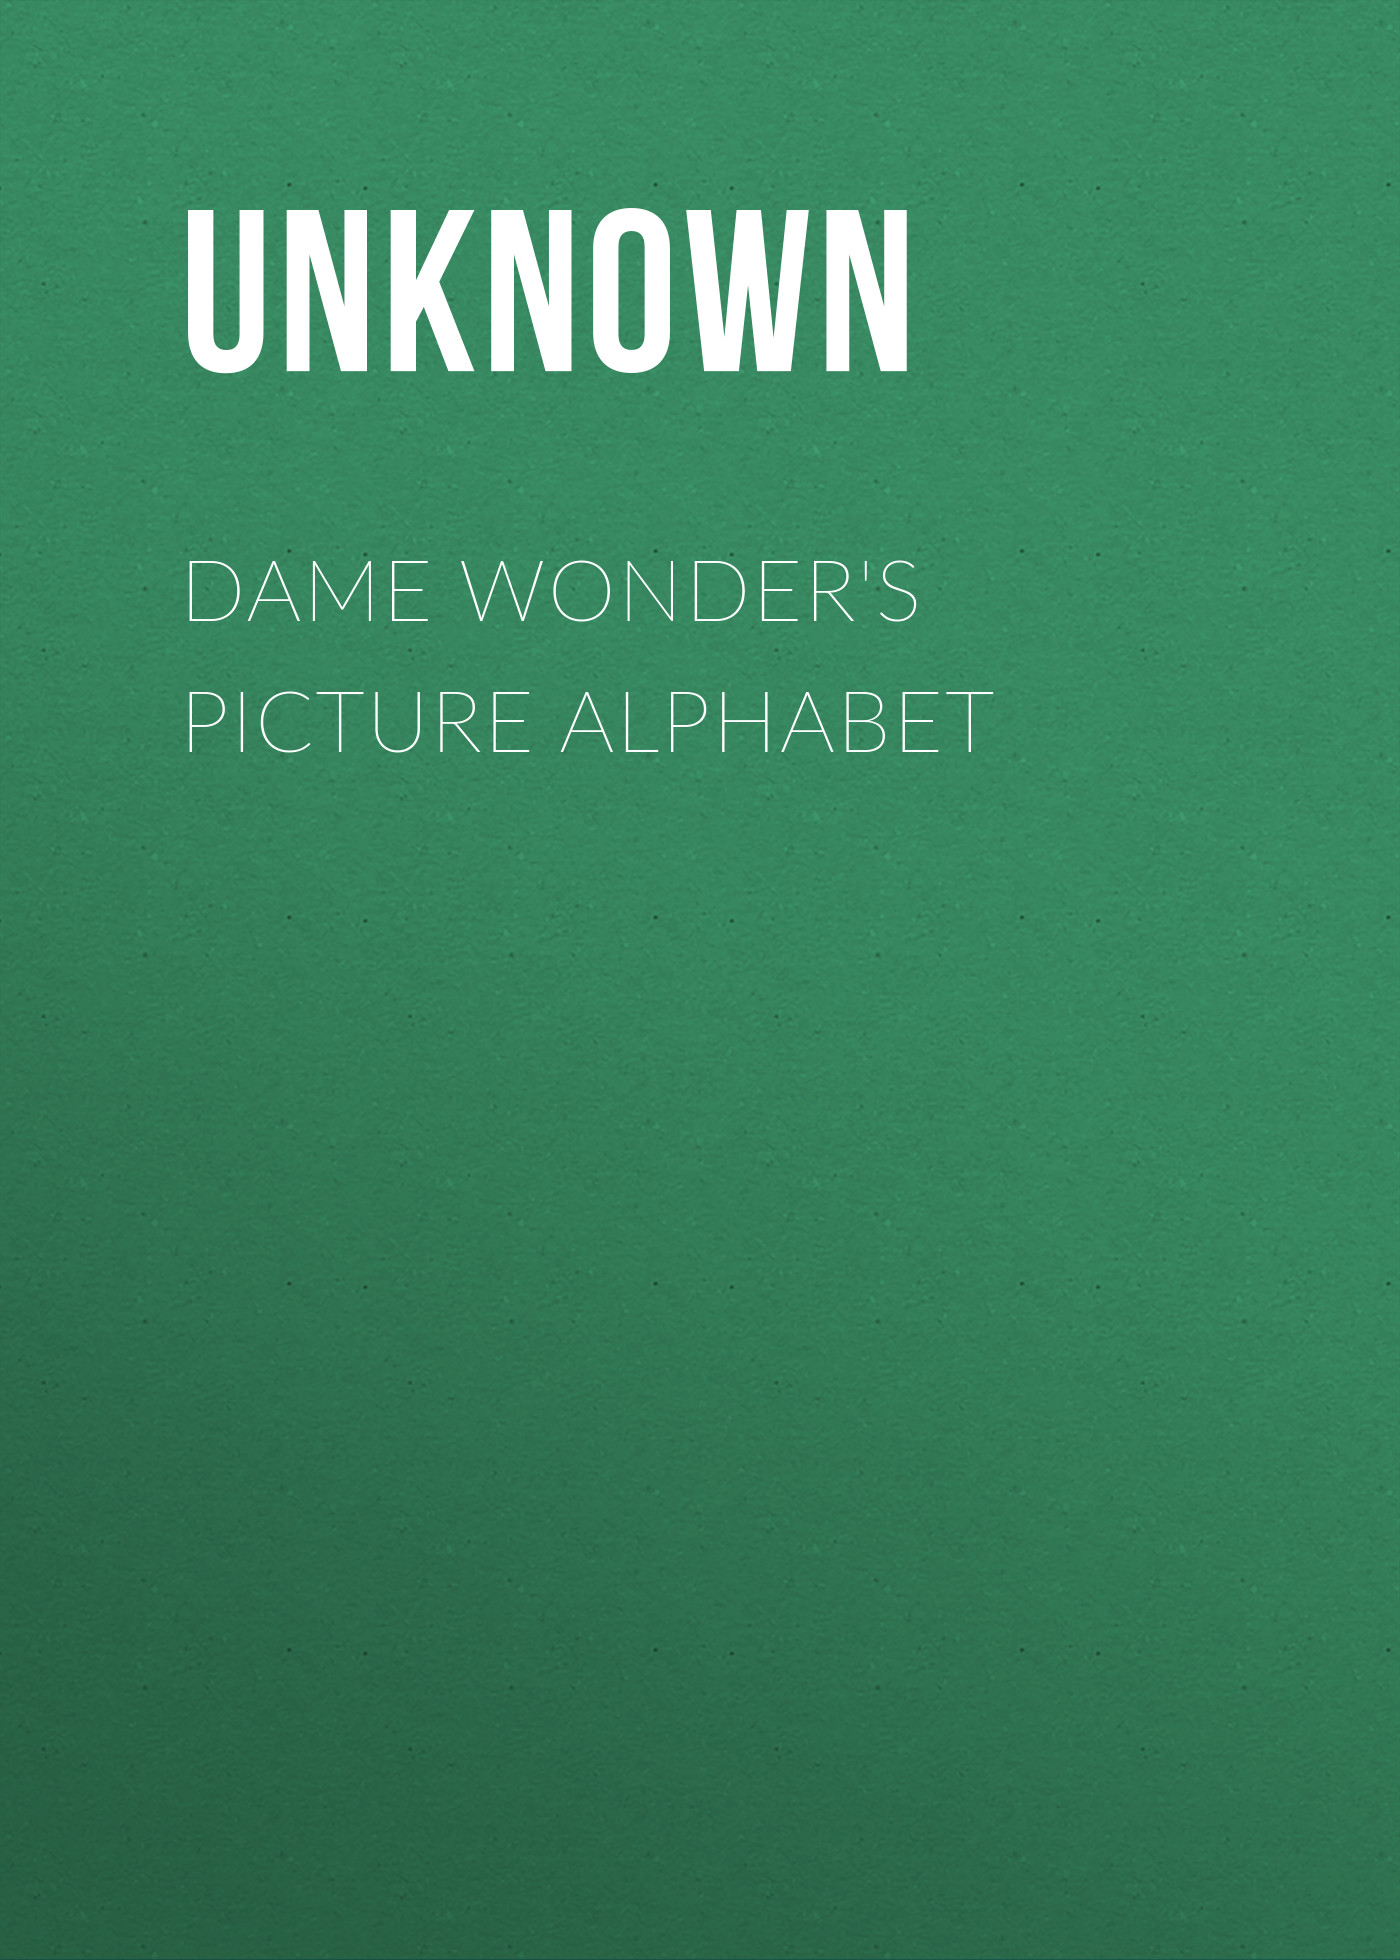 Книга Dame Wonder's Picture Alphabet из серии , созданная Unknown Unknown, может относится к жанру Зарубежные детские книги, Зарубежная старинная литература, Зарубежная классика. Стоимость электронной книги Dame Wonder's Picture Alphabet с идентификатором 35495991 составляет 0 руб.